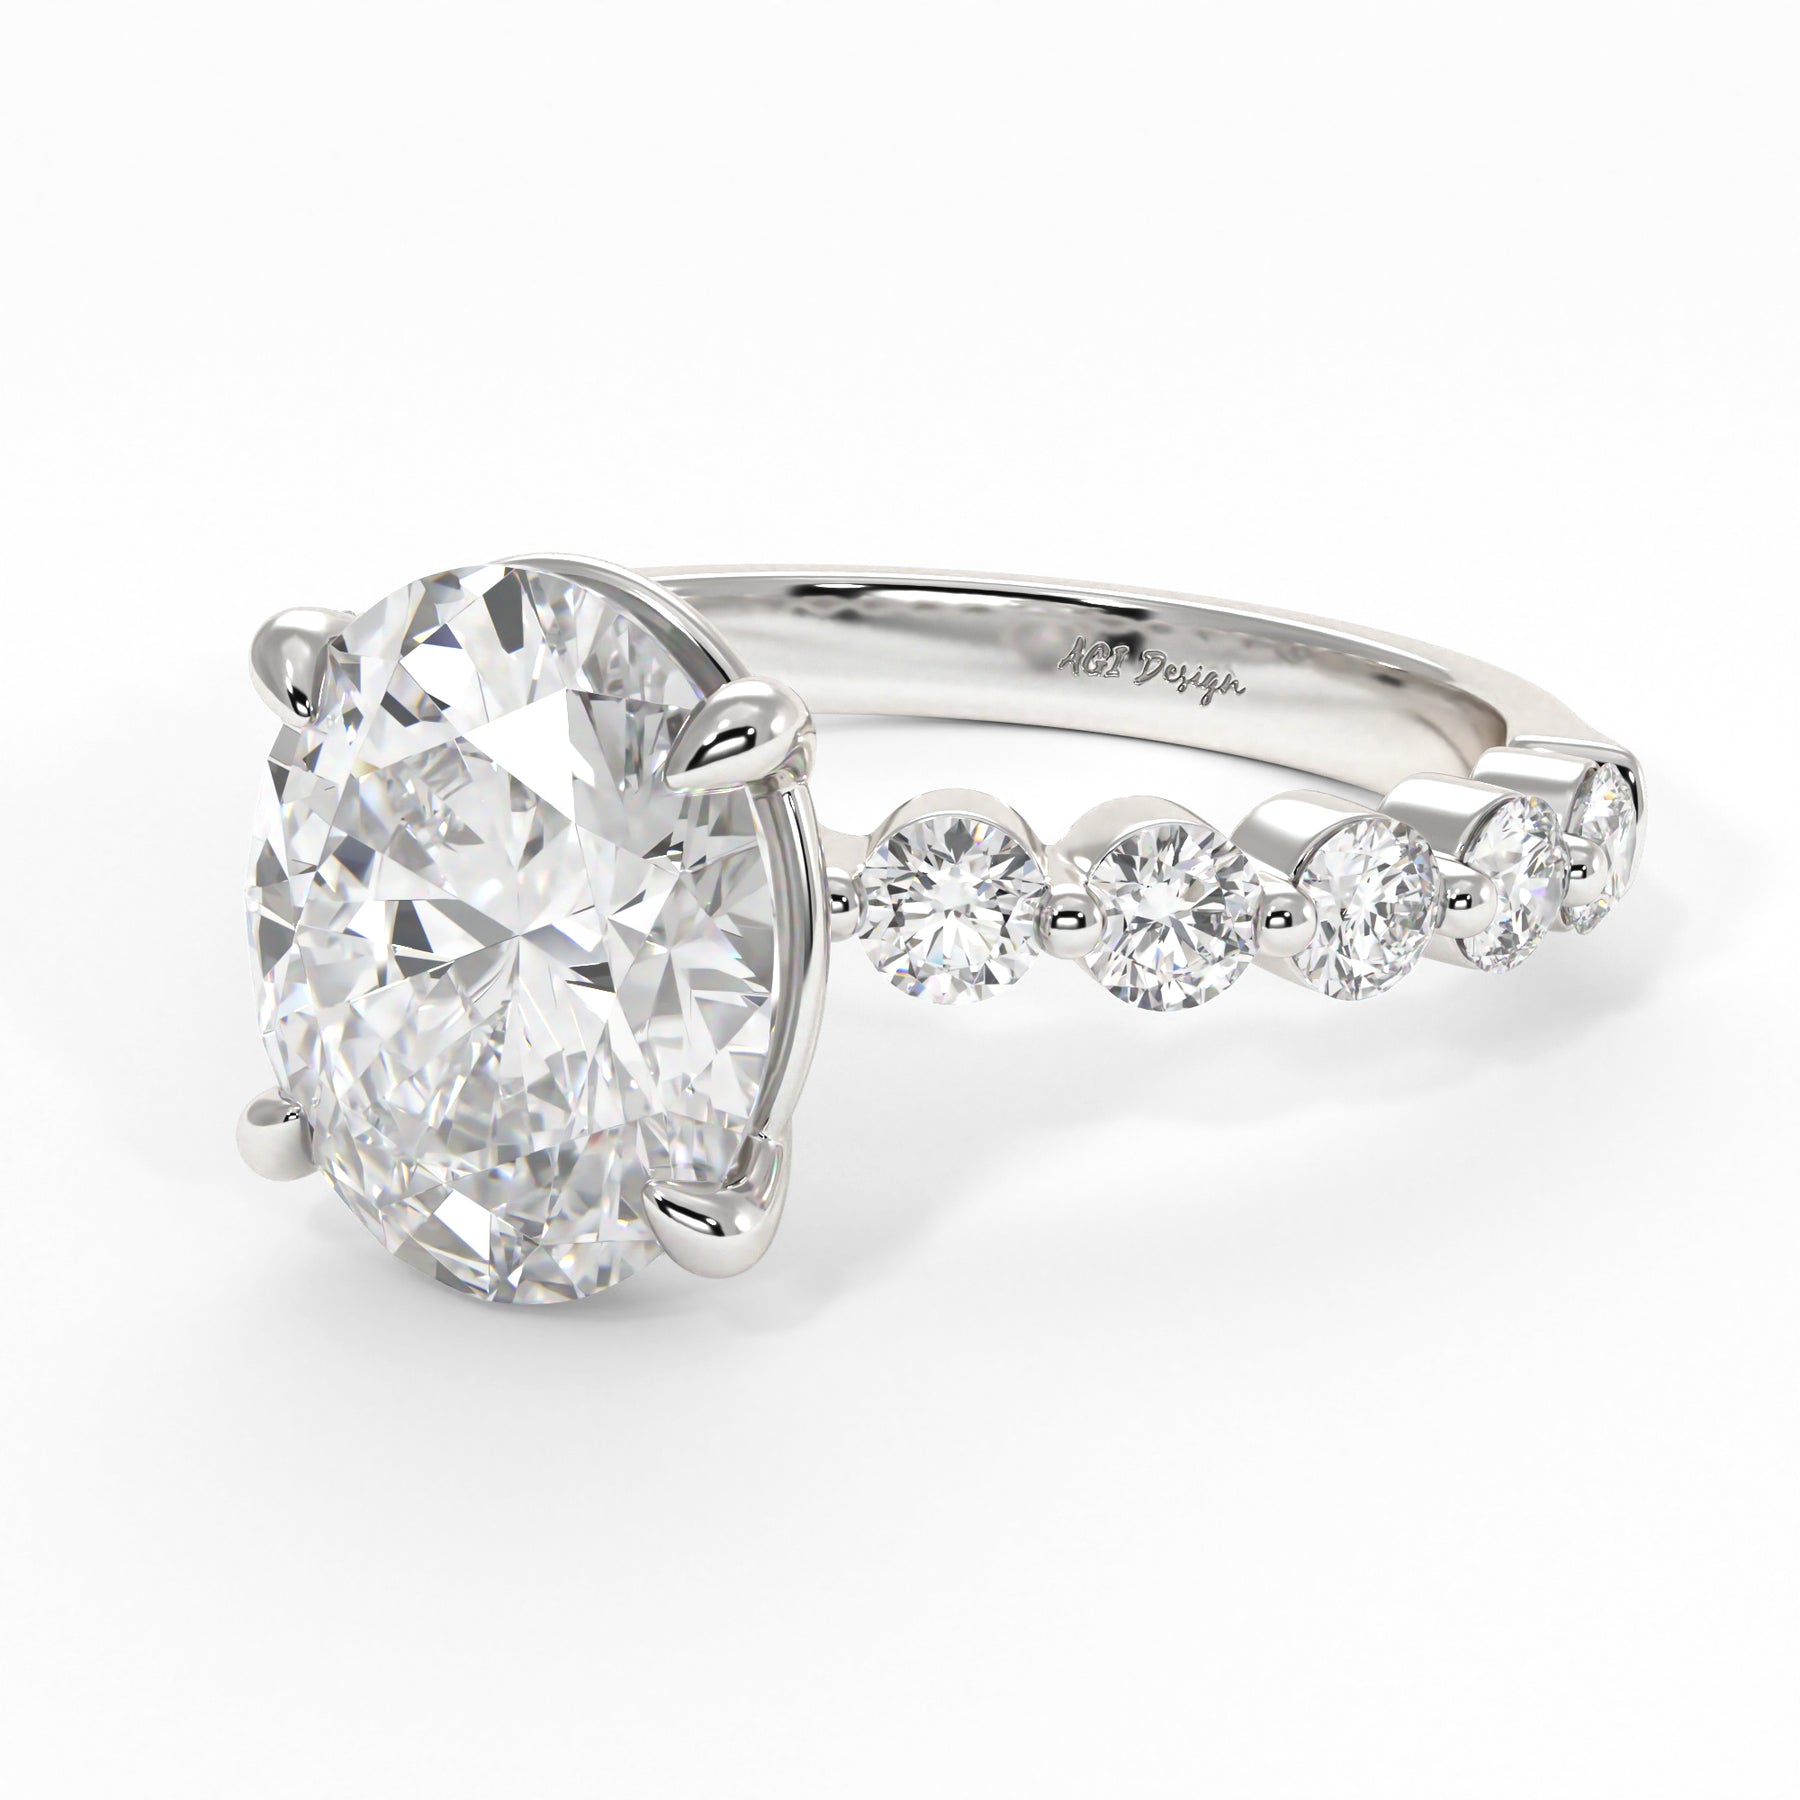 Samantha – Lala Diamonds and Jewelry